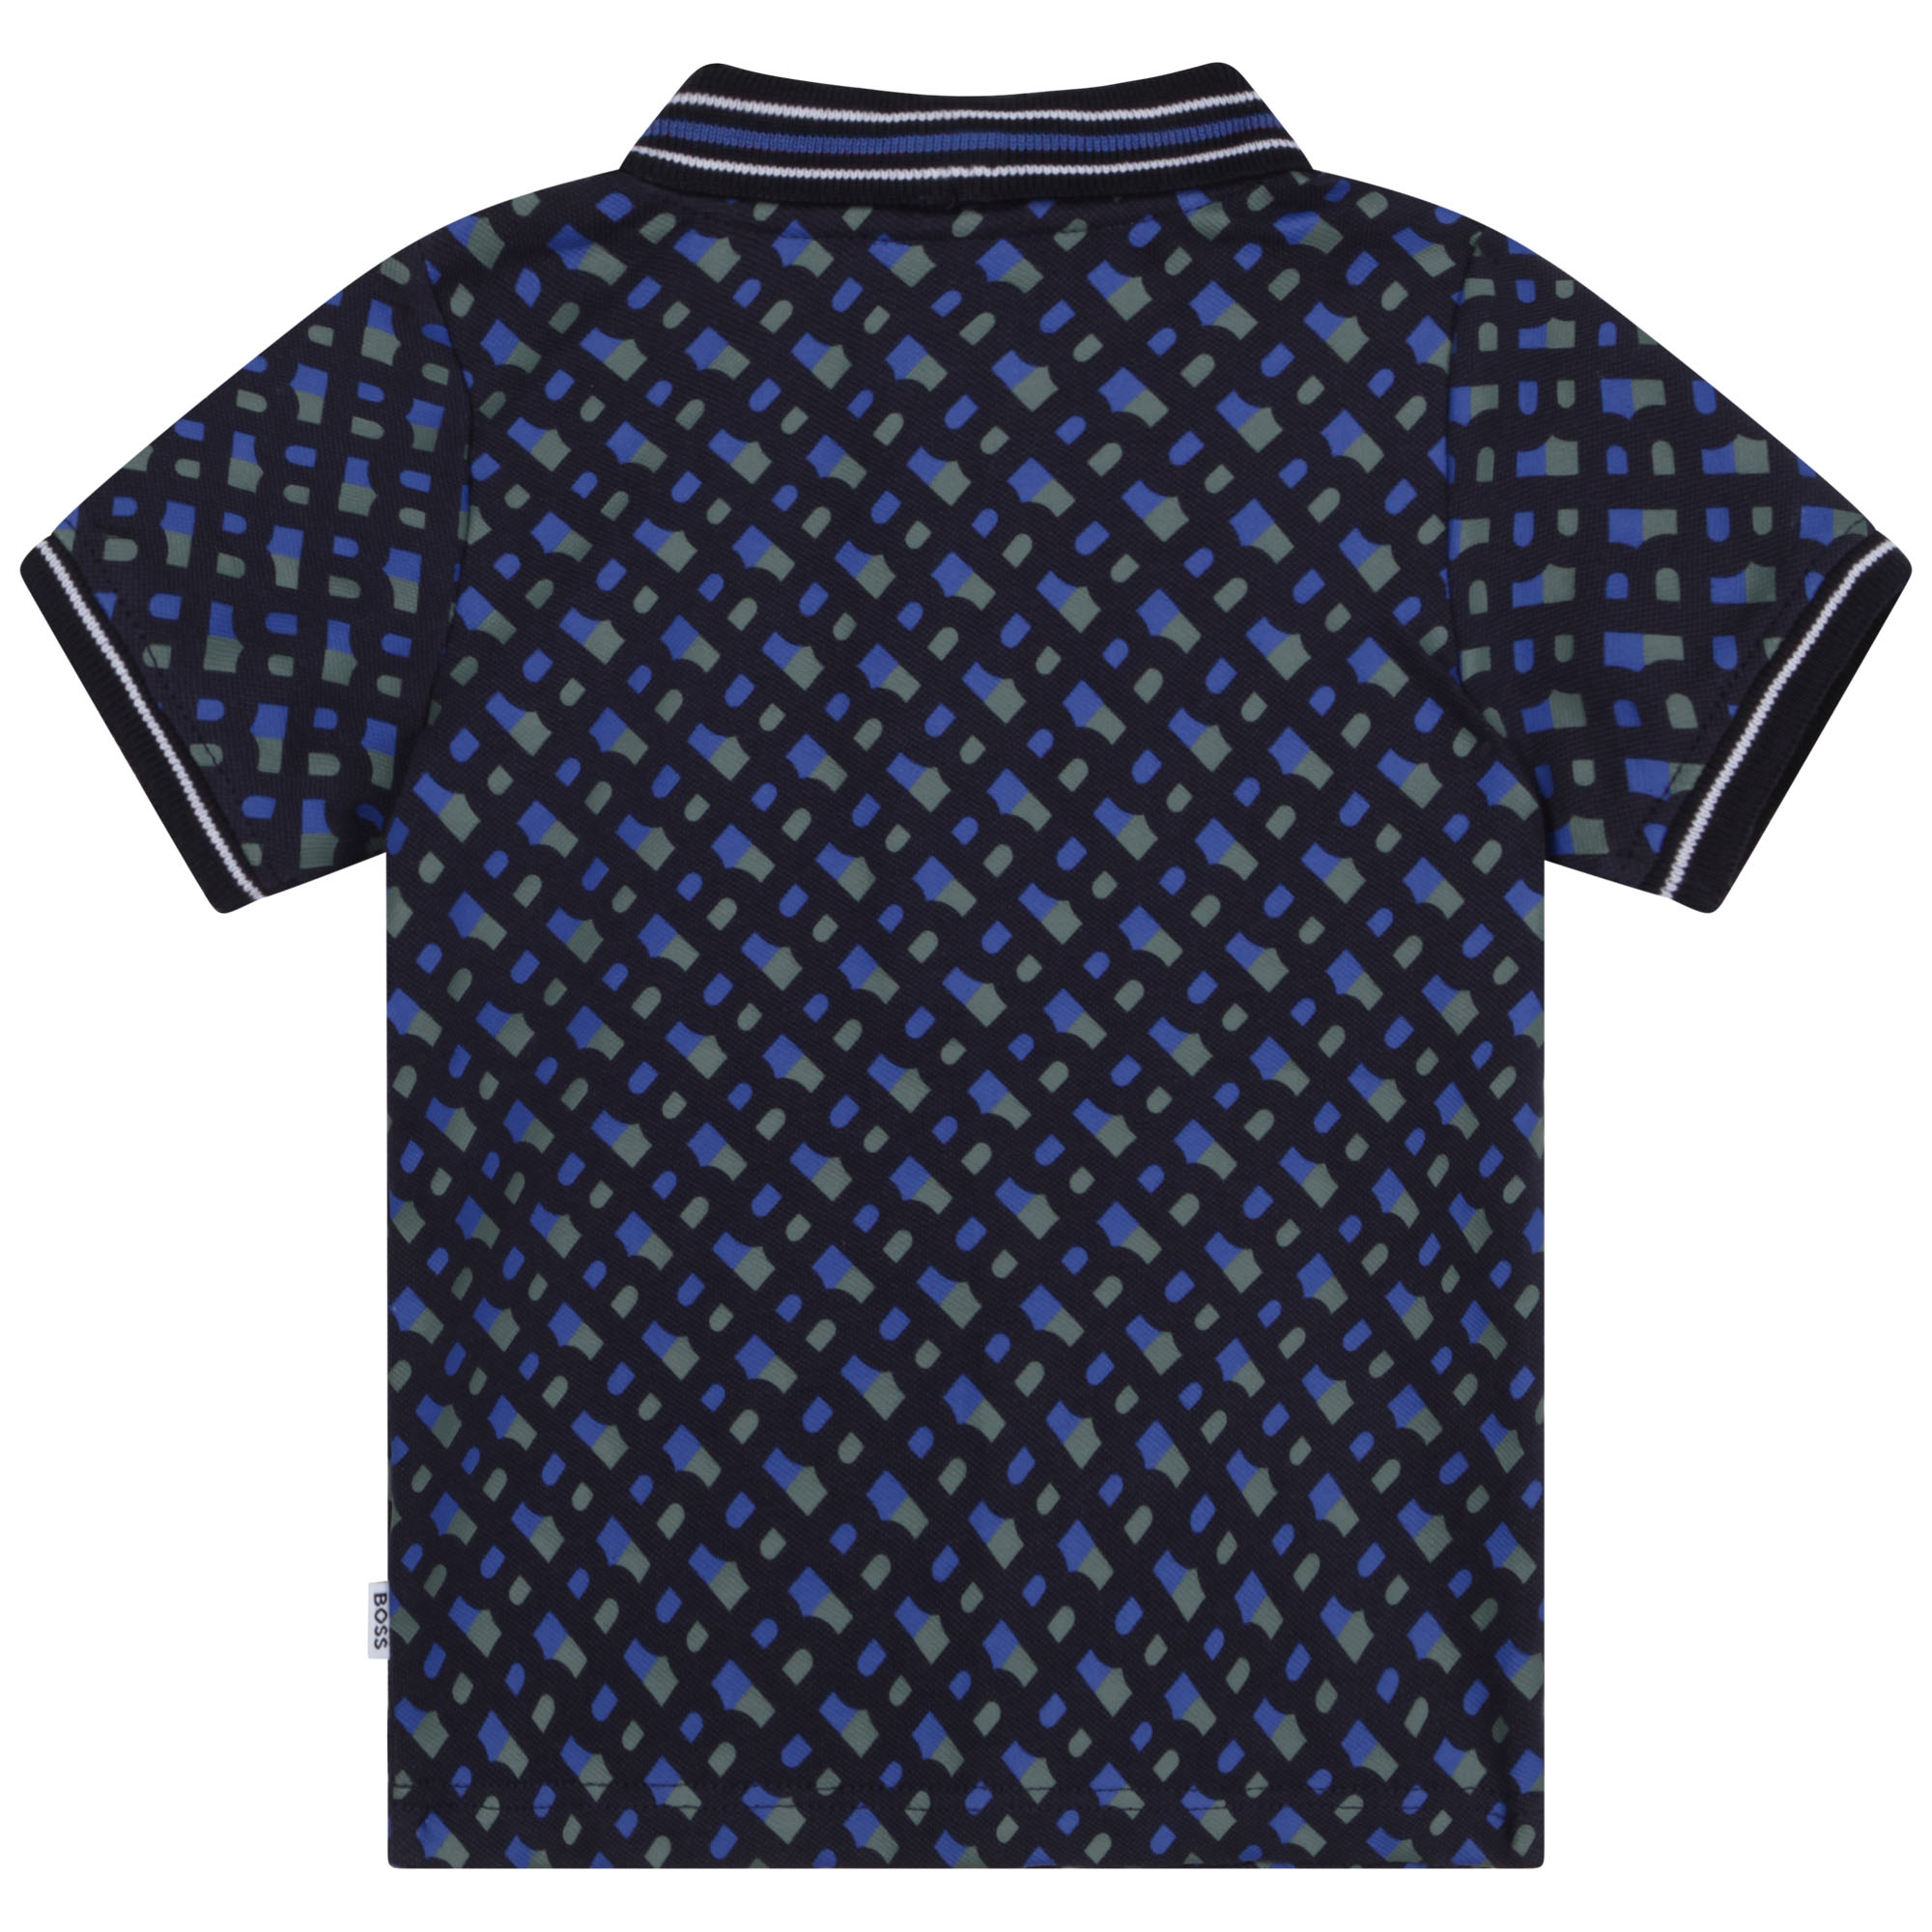 Kurzärmliges polo-shirt BOSS Für JUNGE